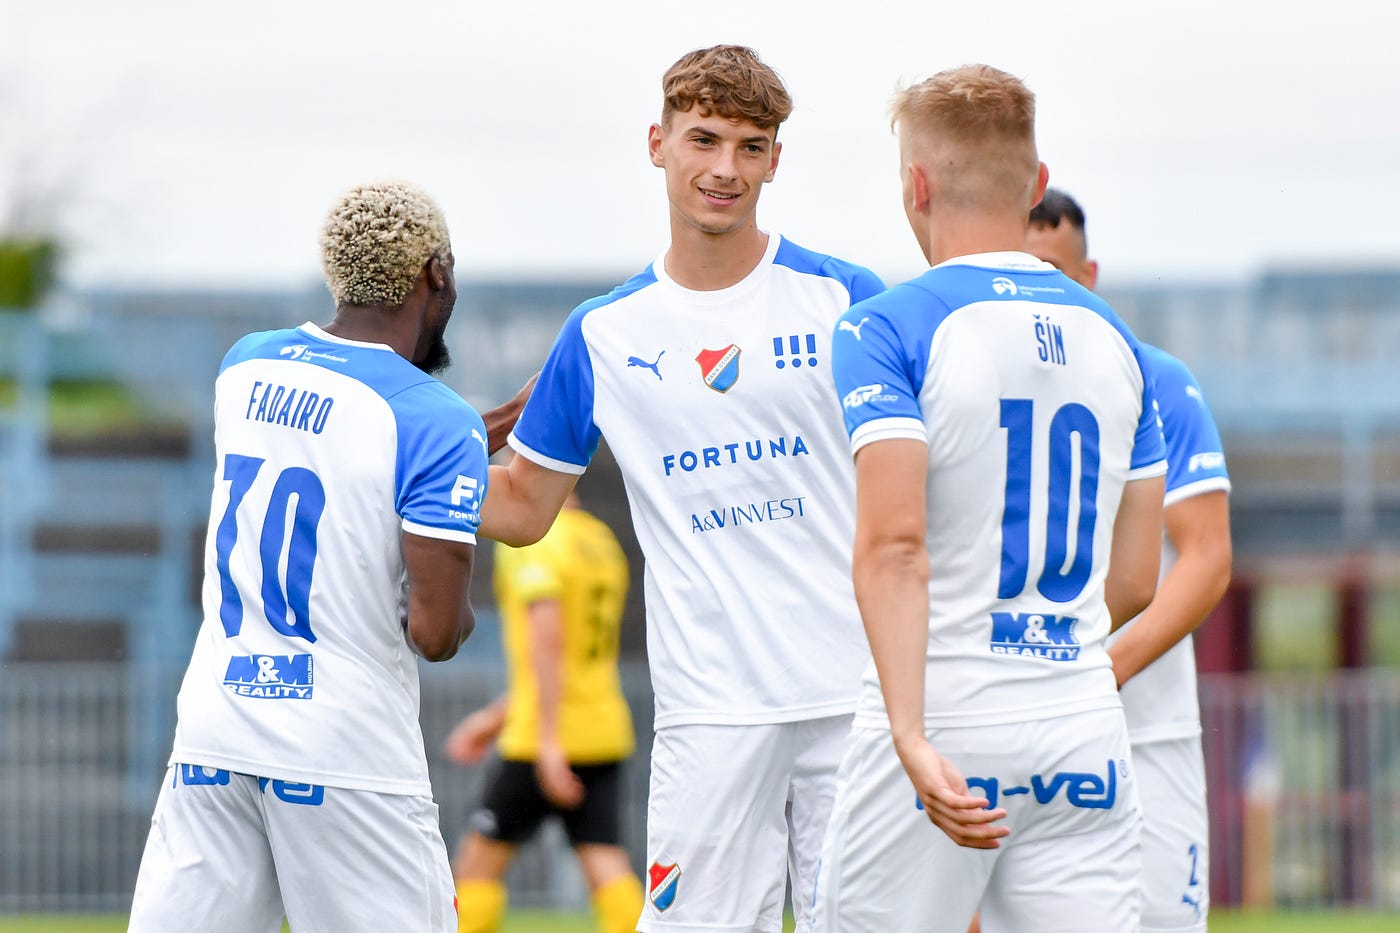 2023/24 team preview: FC Baník Ostrava | by Tomas Danicek | Medium